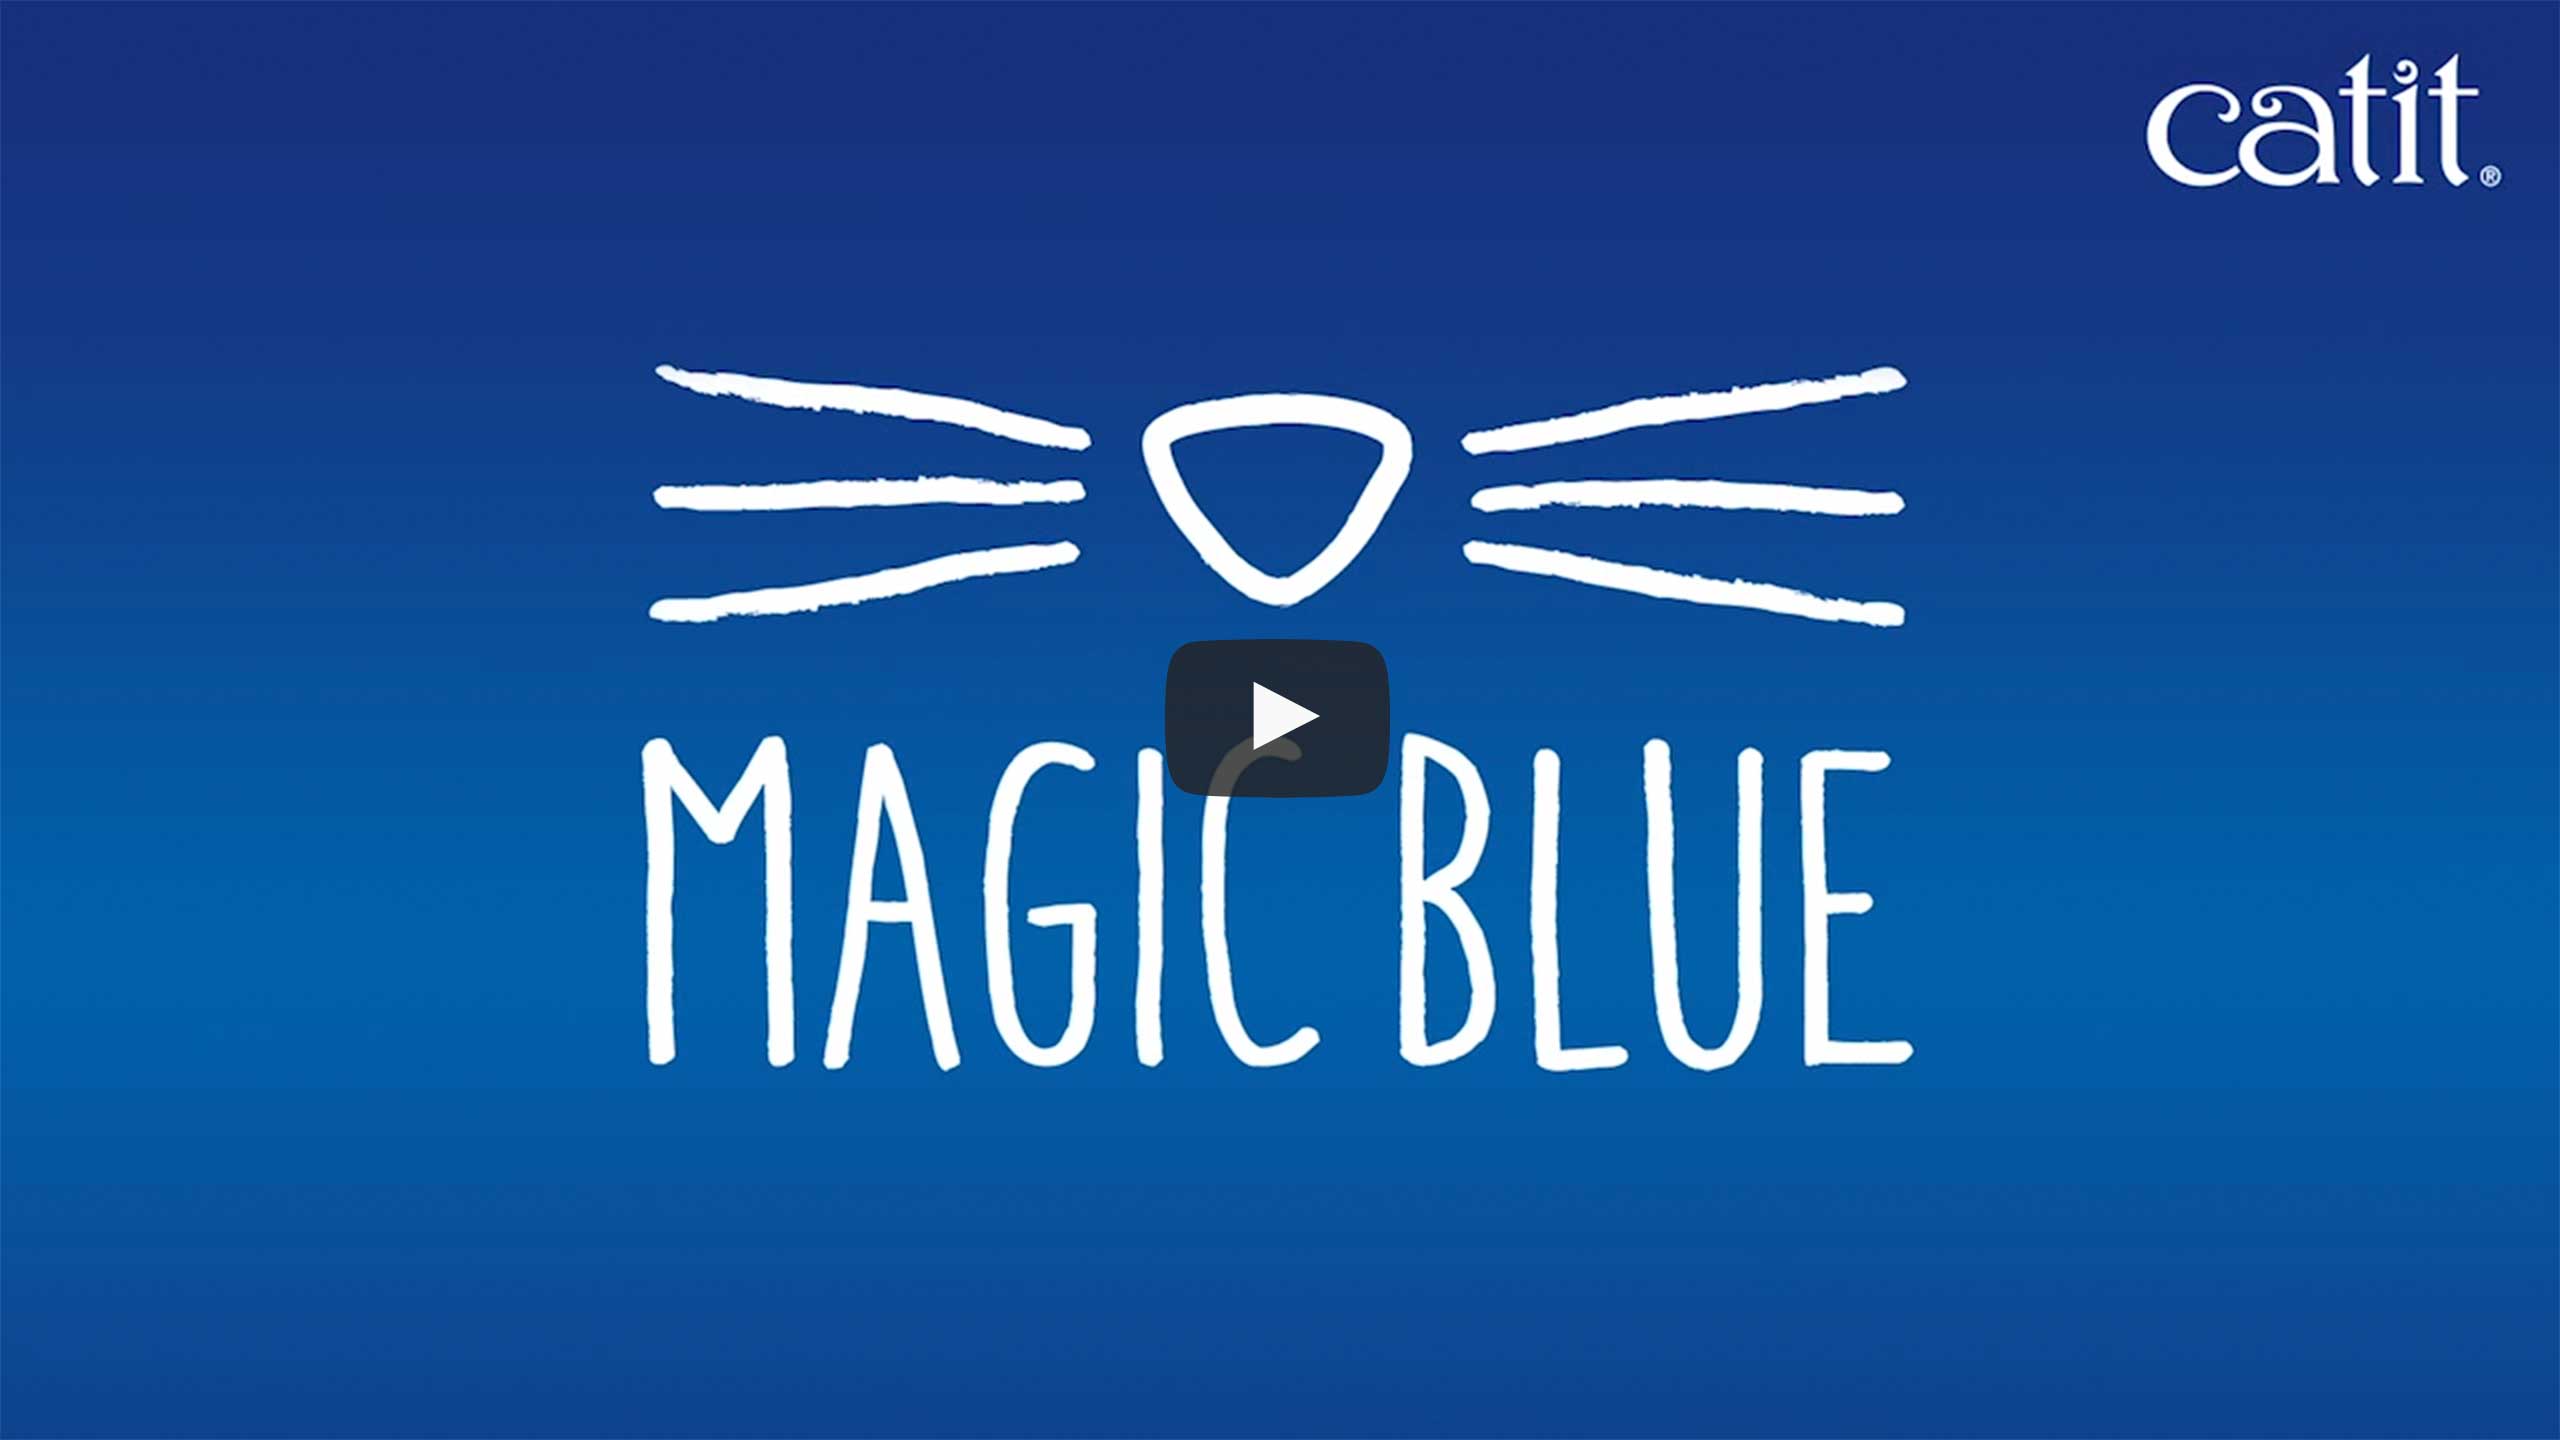 Catit Magic Blue video